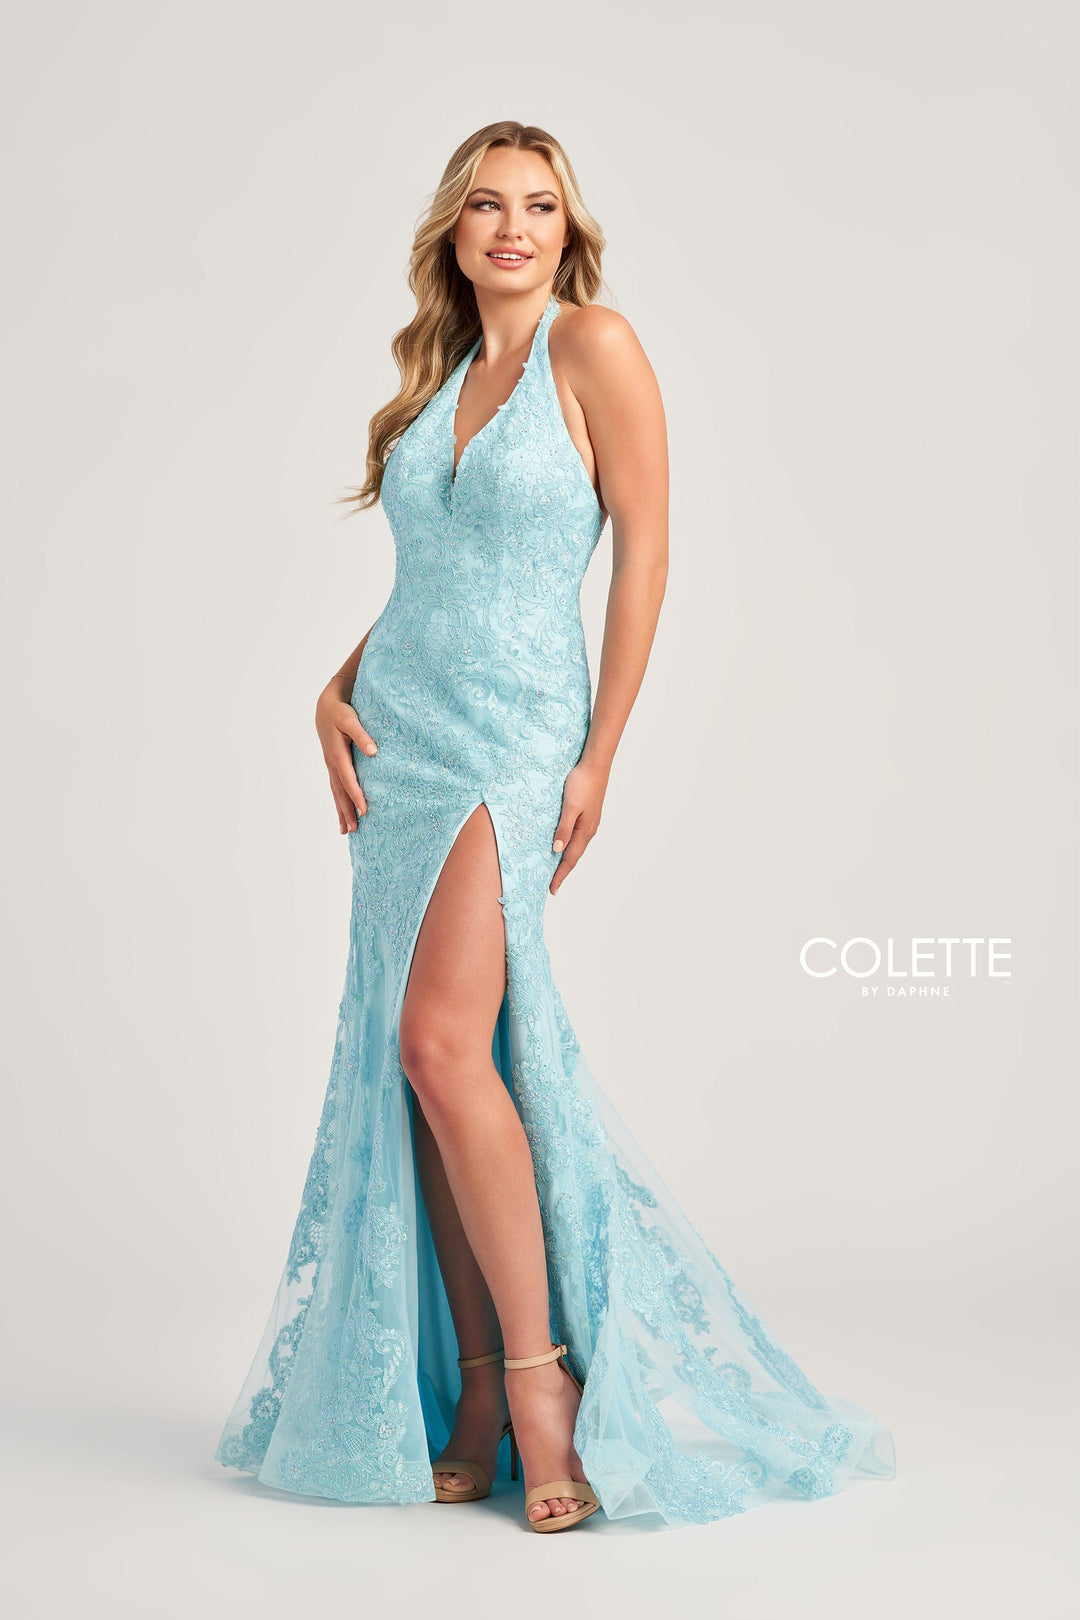 Colette for Mon Cheri Prom Colette: CL5275